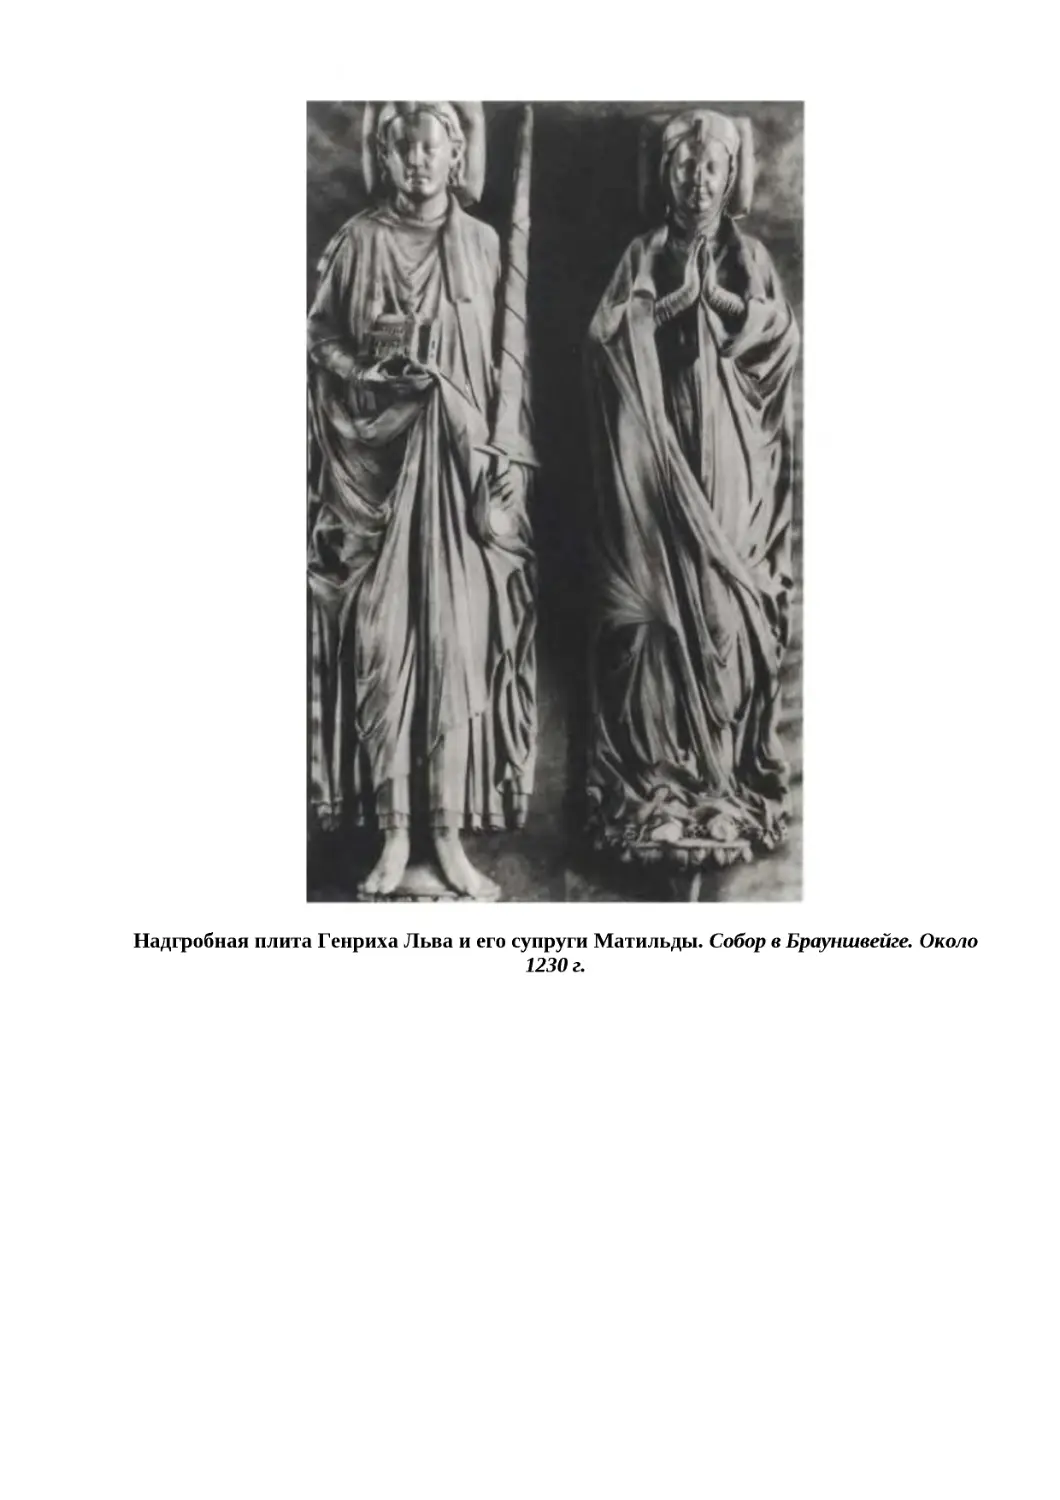 "
﻿Надгробная плита Генриха Льва и его супруги Матильды. Собор в Брауншвейге. Около 1230 г